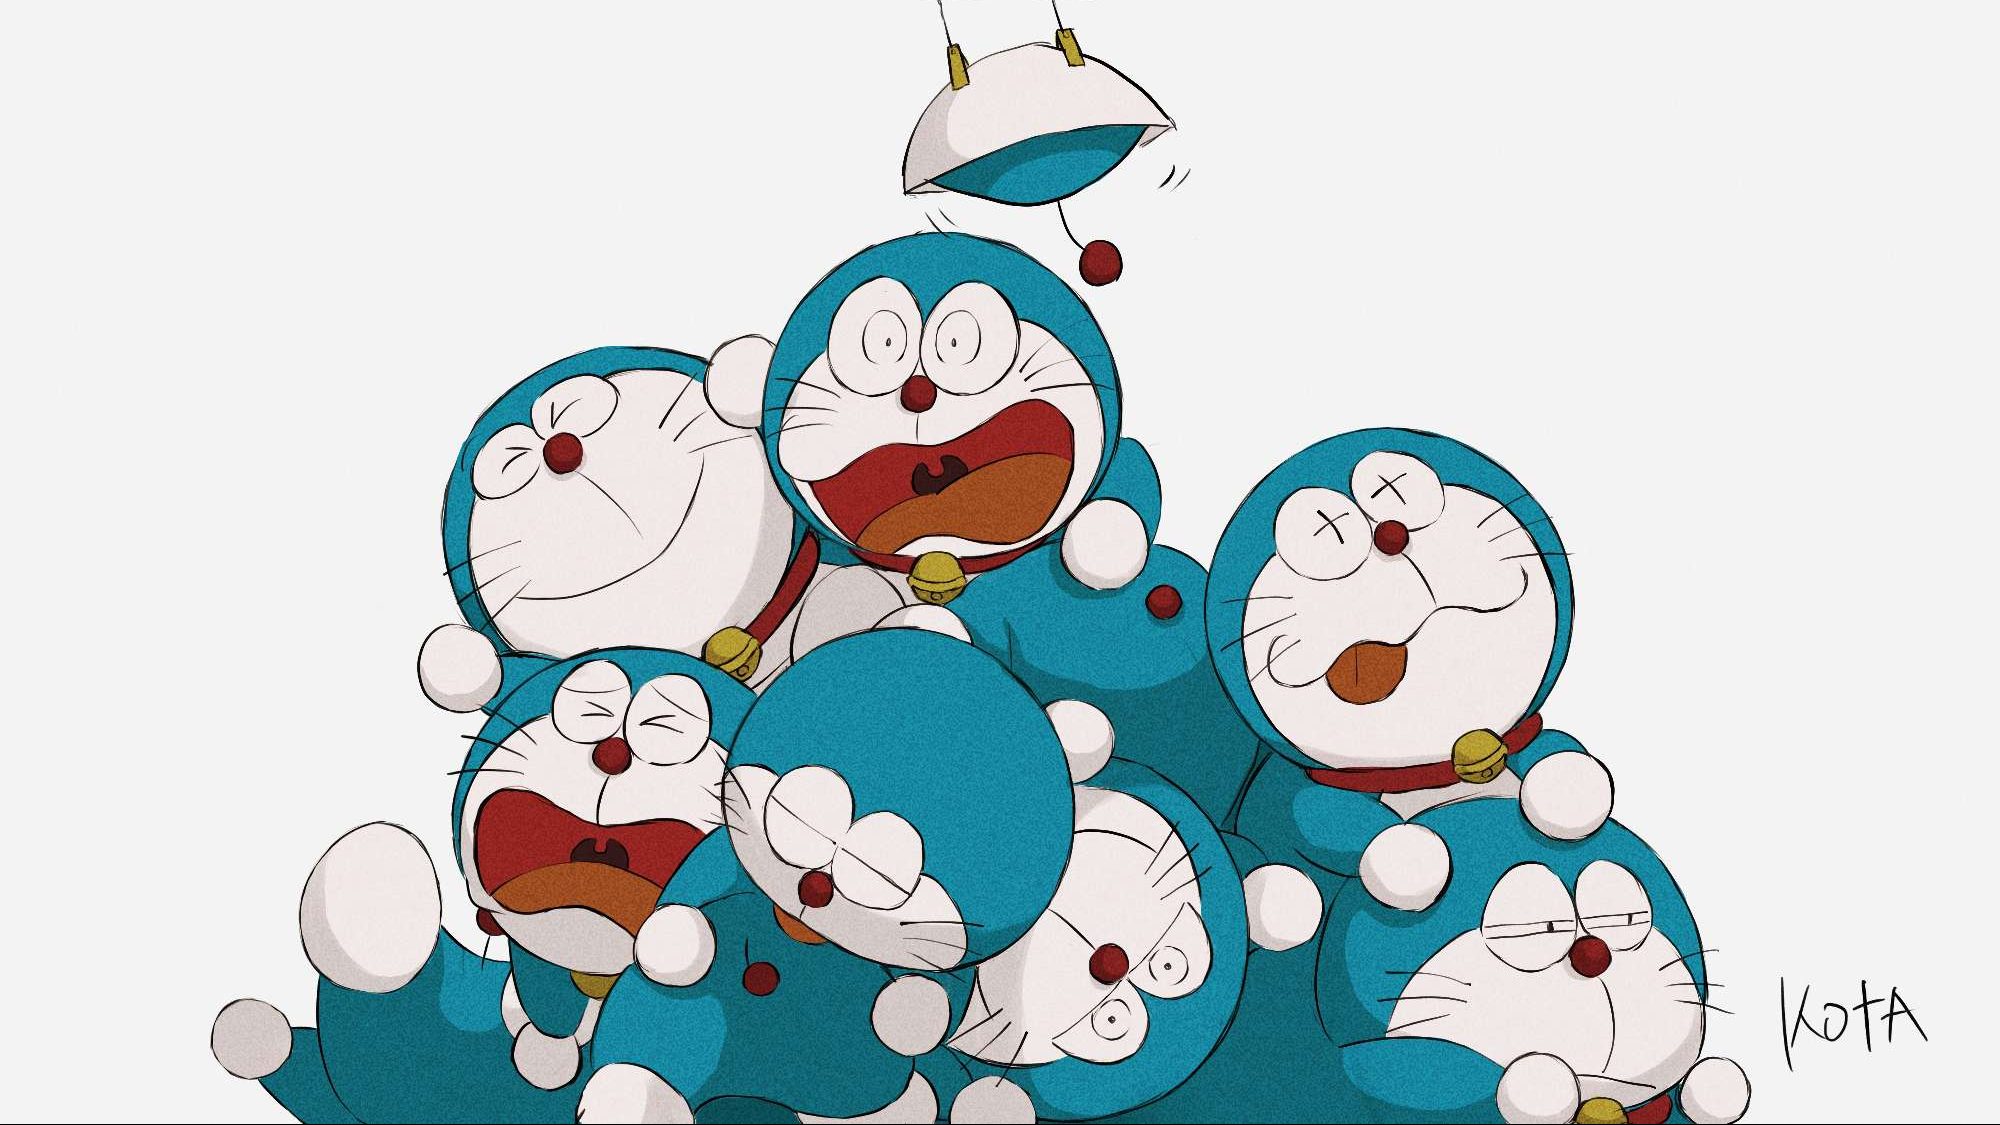 Tạo hình của 'chồn xanh' Doraemon qua từng thời kỳ đã có sự thay đổi như thế nào?